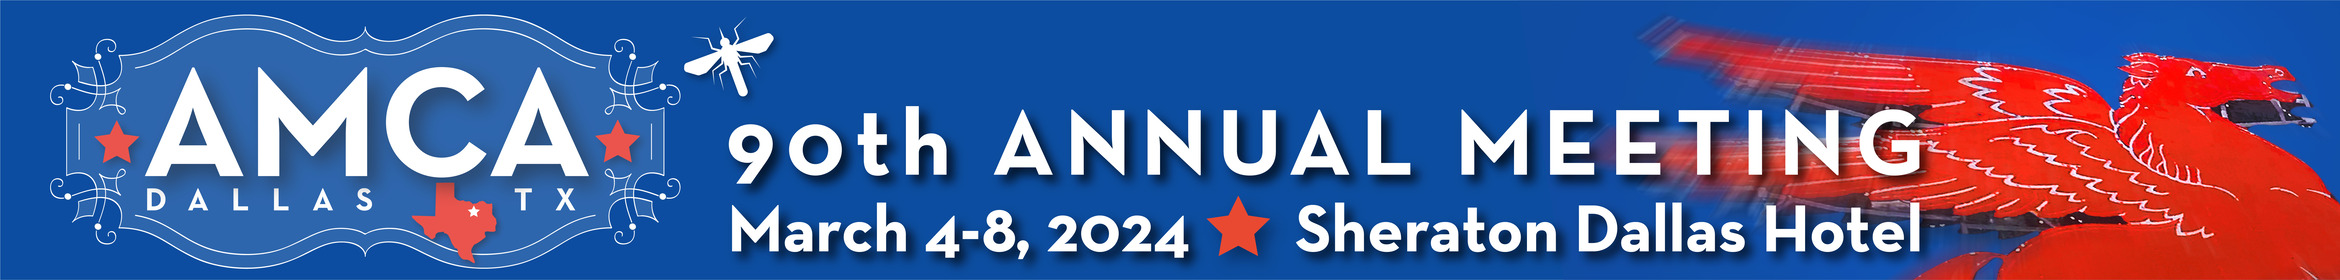 90th Annual Meeting Main banner